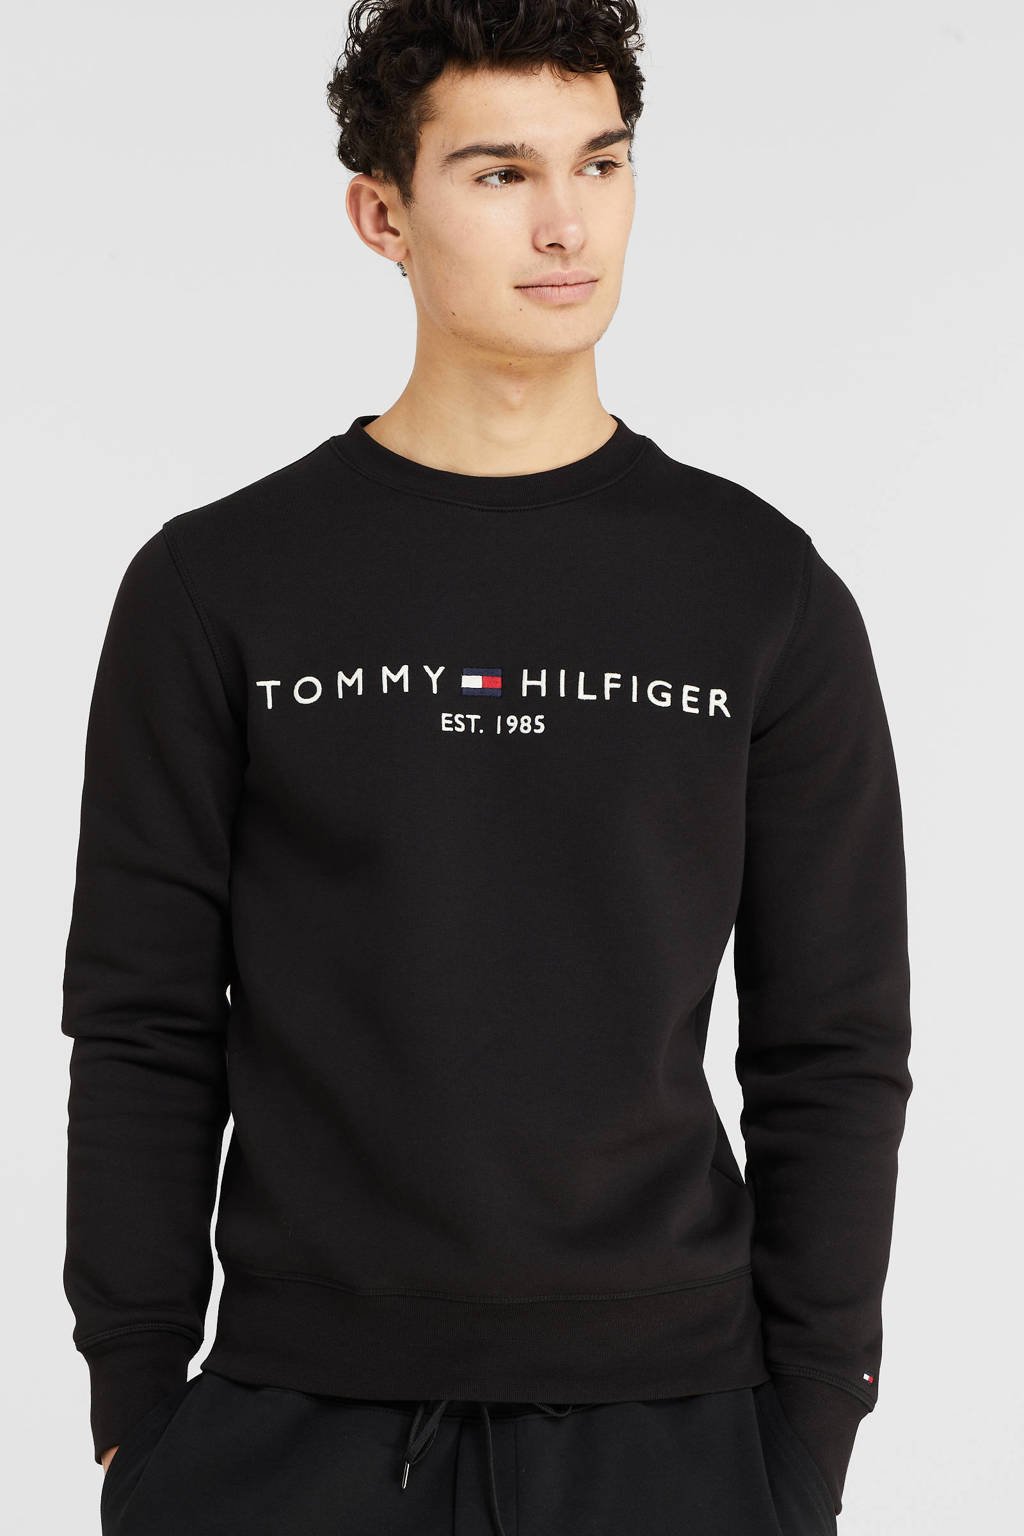 fluctueren herhaling Autonomie Tommy Hilfiger sweater met logo zwart | wehkamp